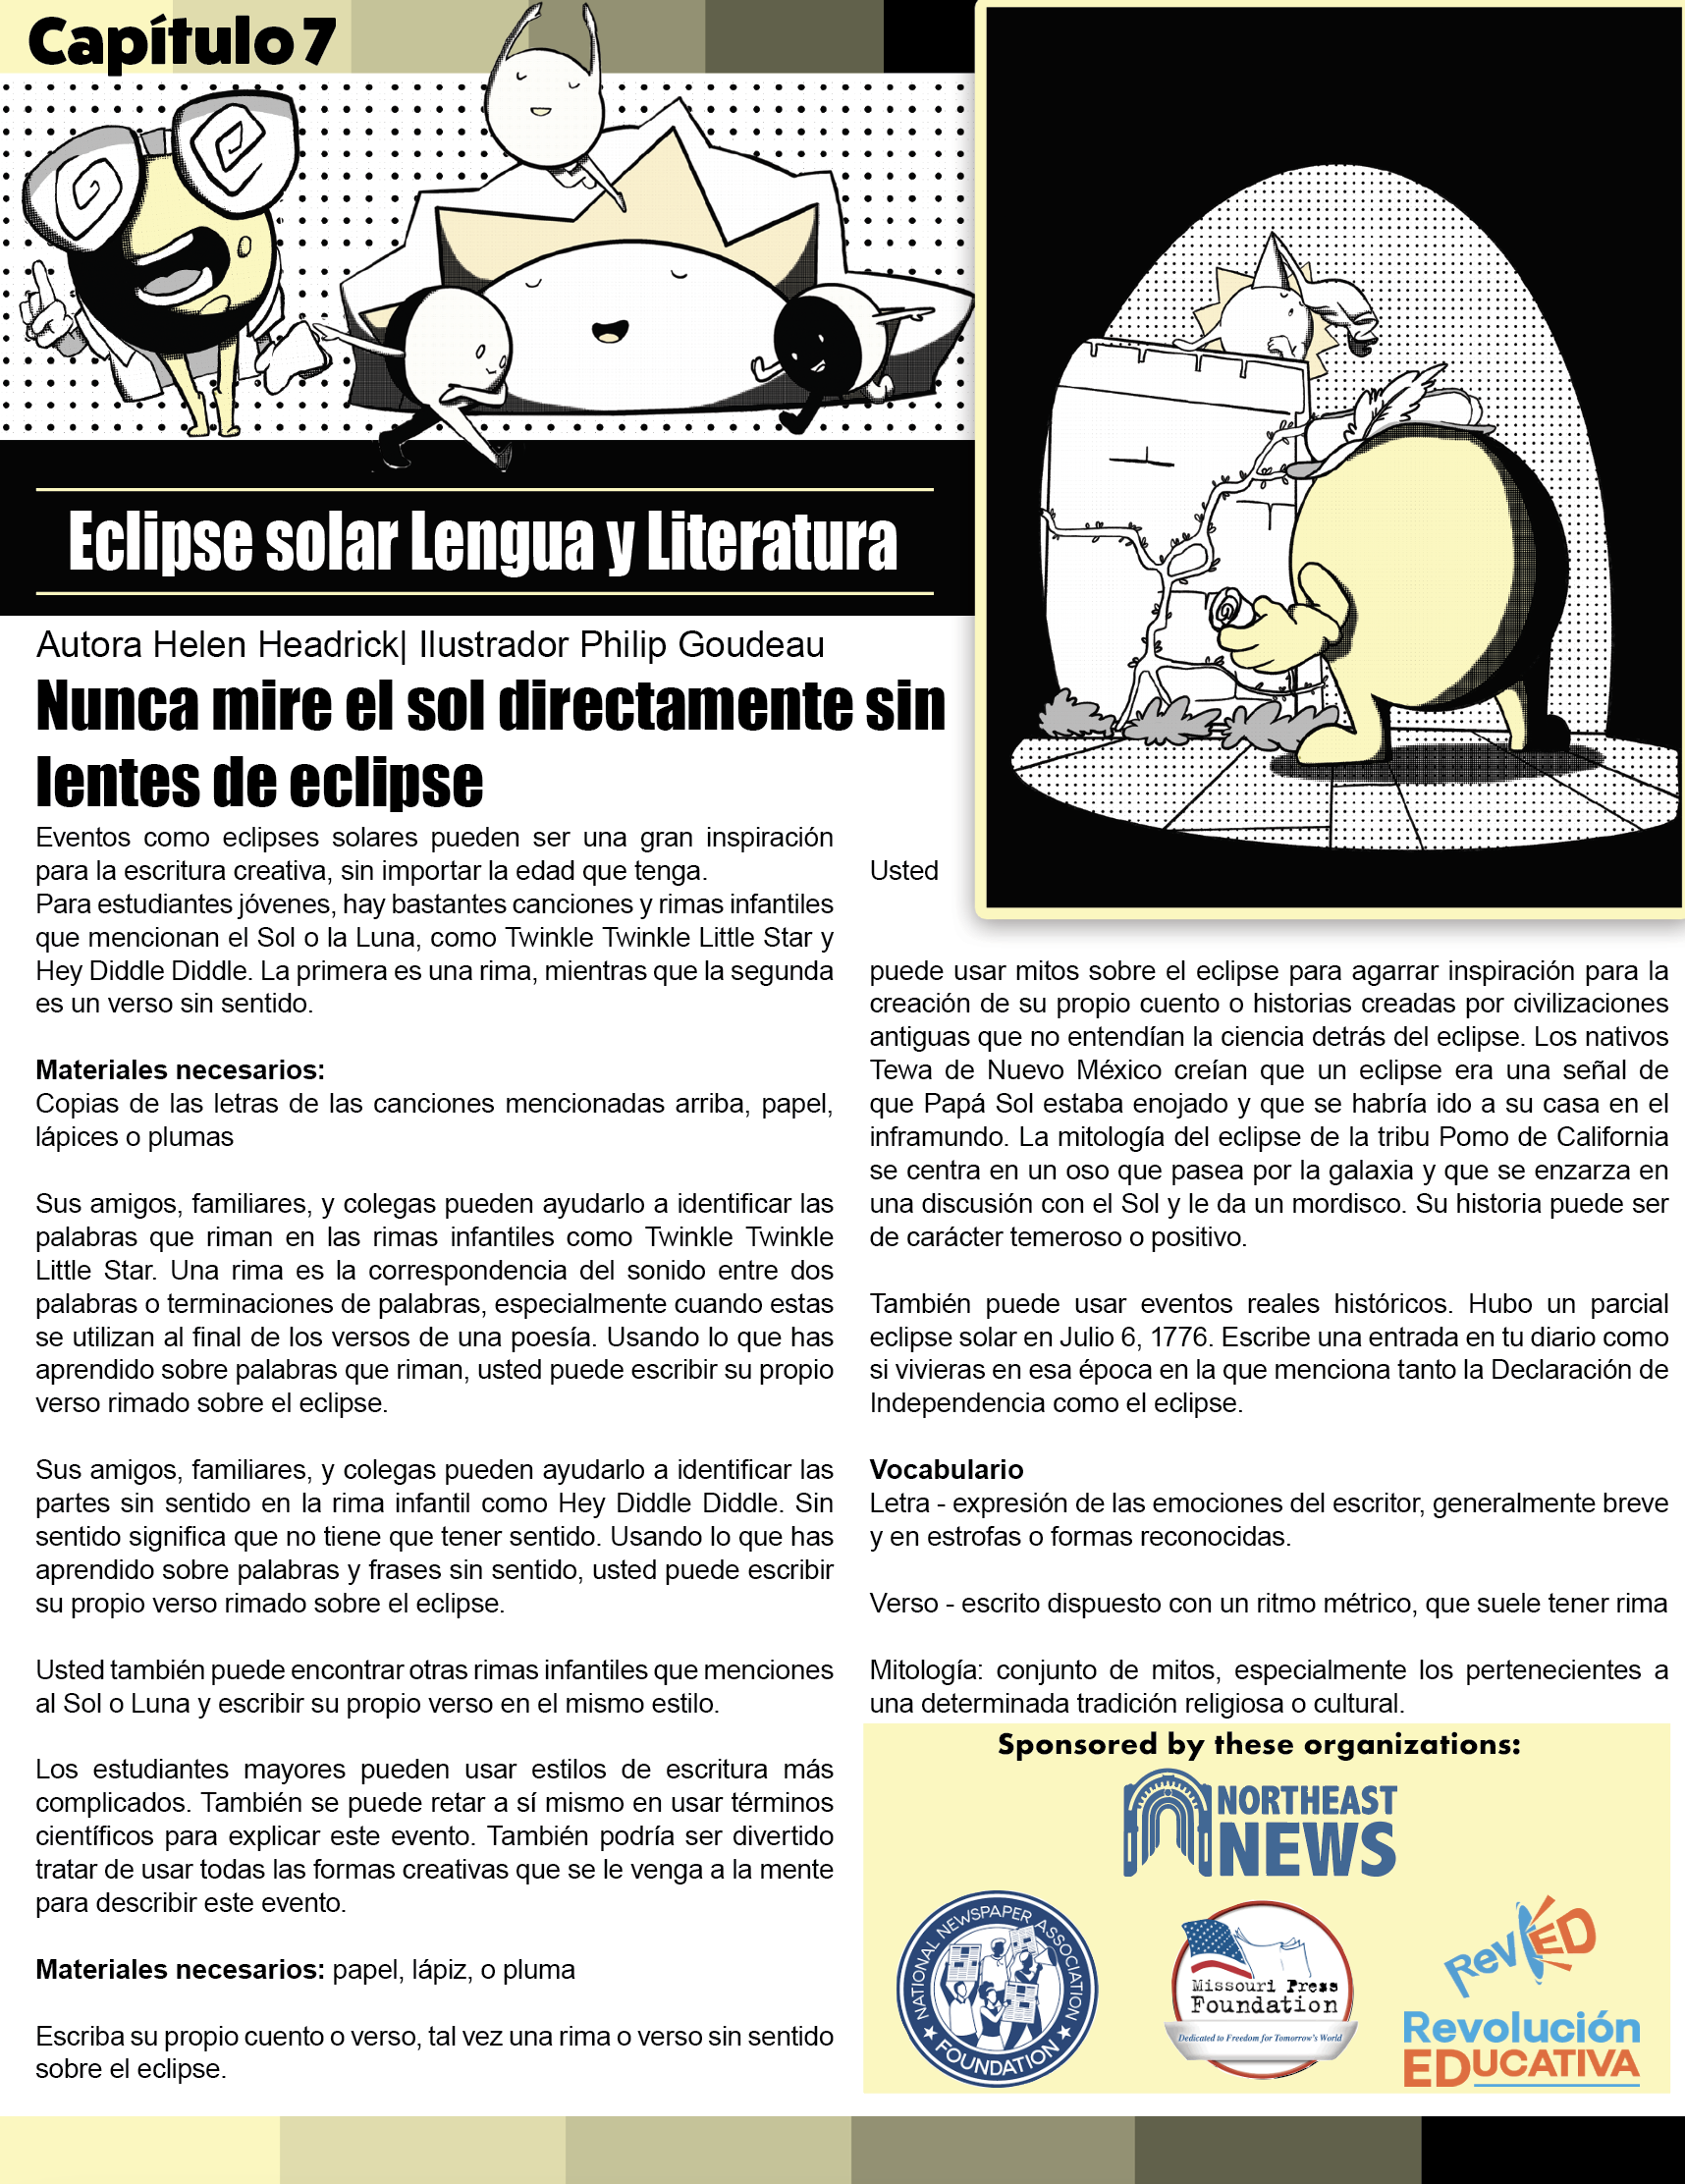 Capitulo 7: Eclipse solar Lengua y Literatura